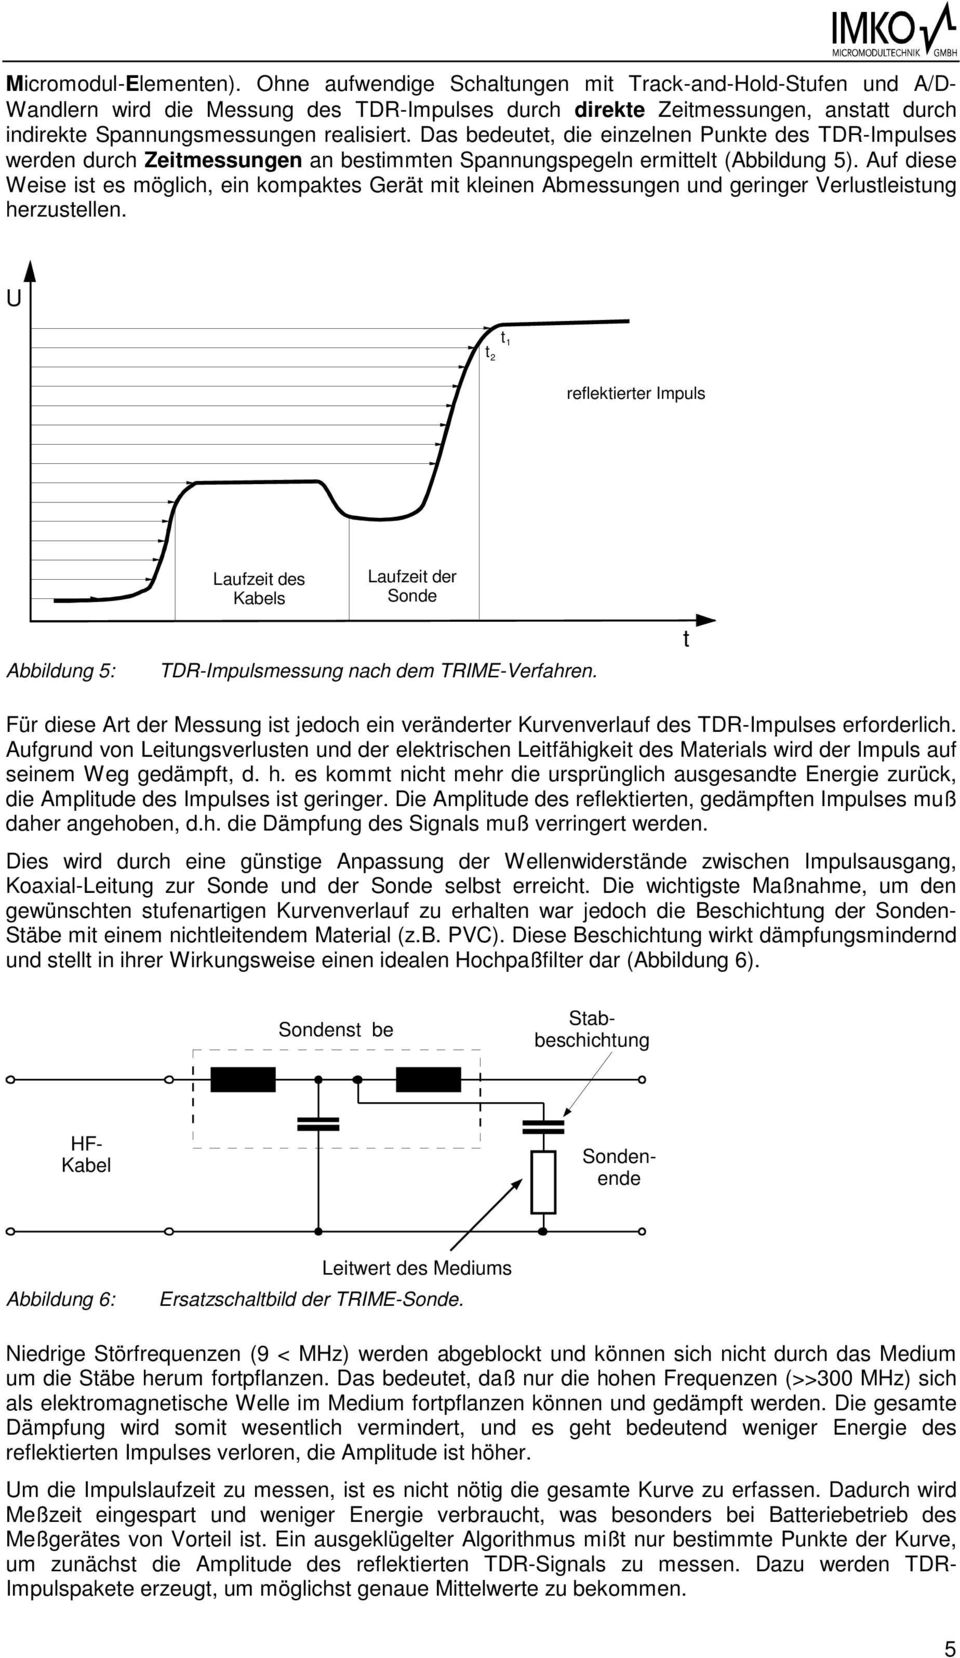 Das bedeue, die einzelnen Punke des TDR-Impulses werden durch Zeimessungen an besimmen Spannungspegeln ermiel (Abbildung 5).